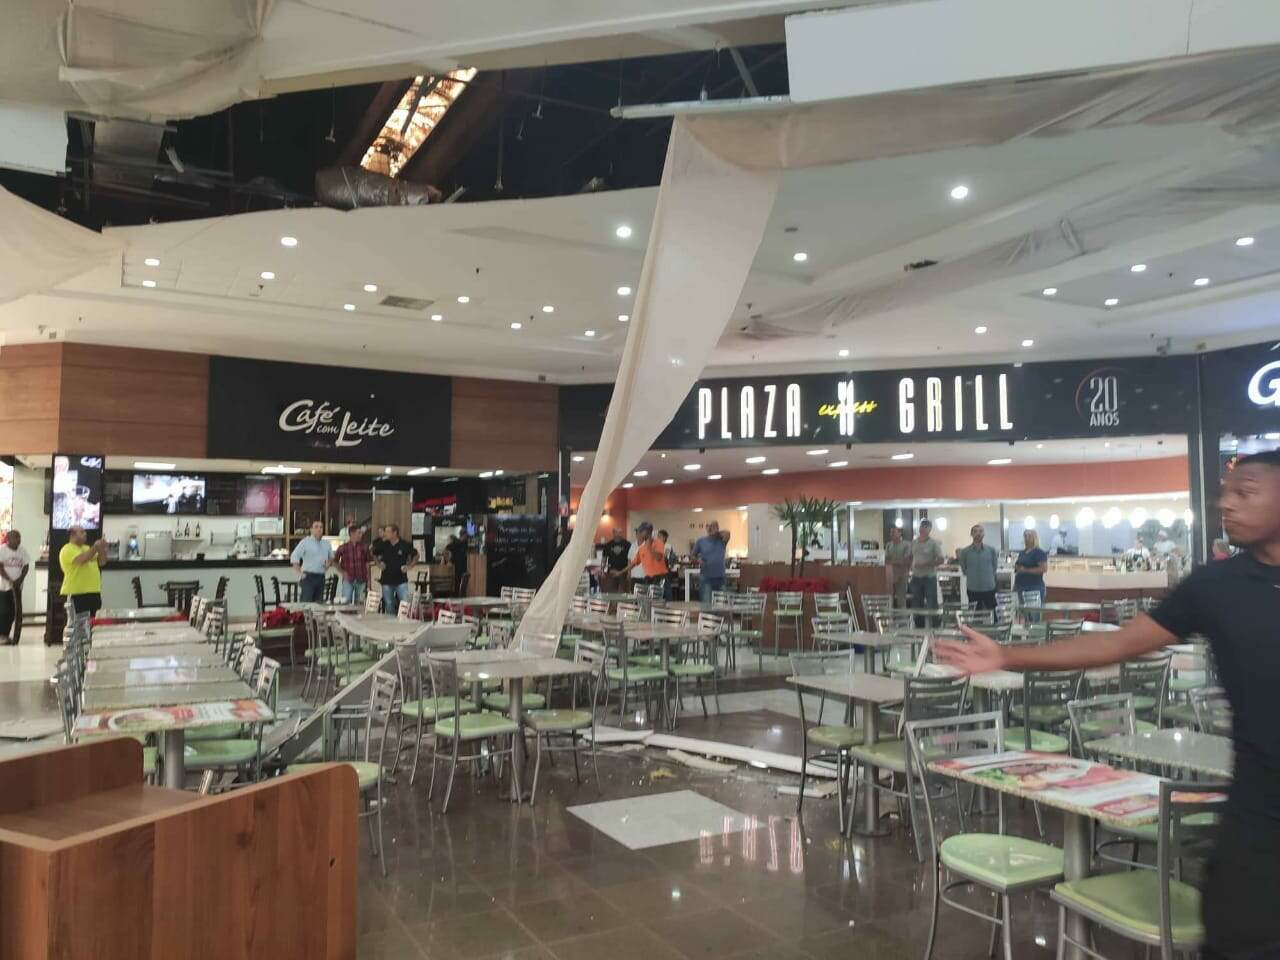 Parte do teto do shopping caiu sobre mesas da praça de alimentação, mas ninguém ficou ferido 